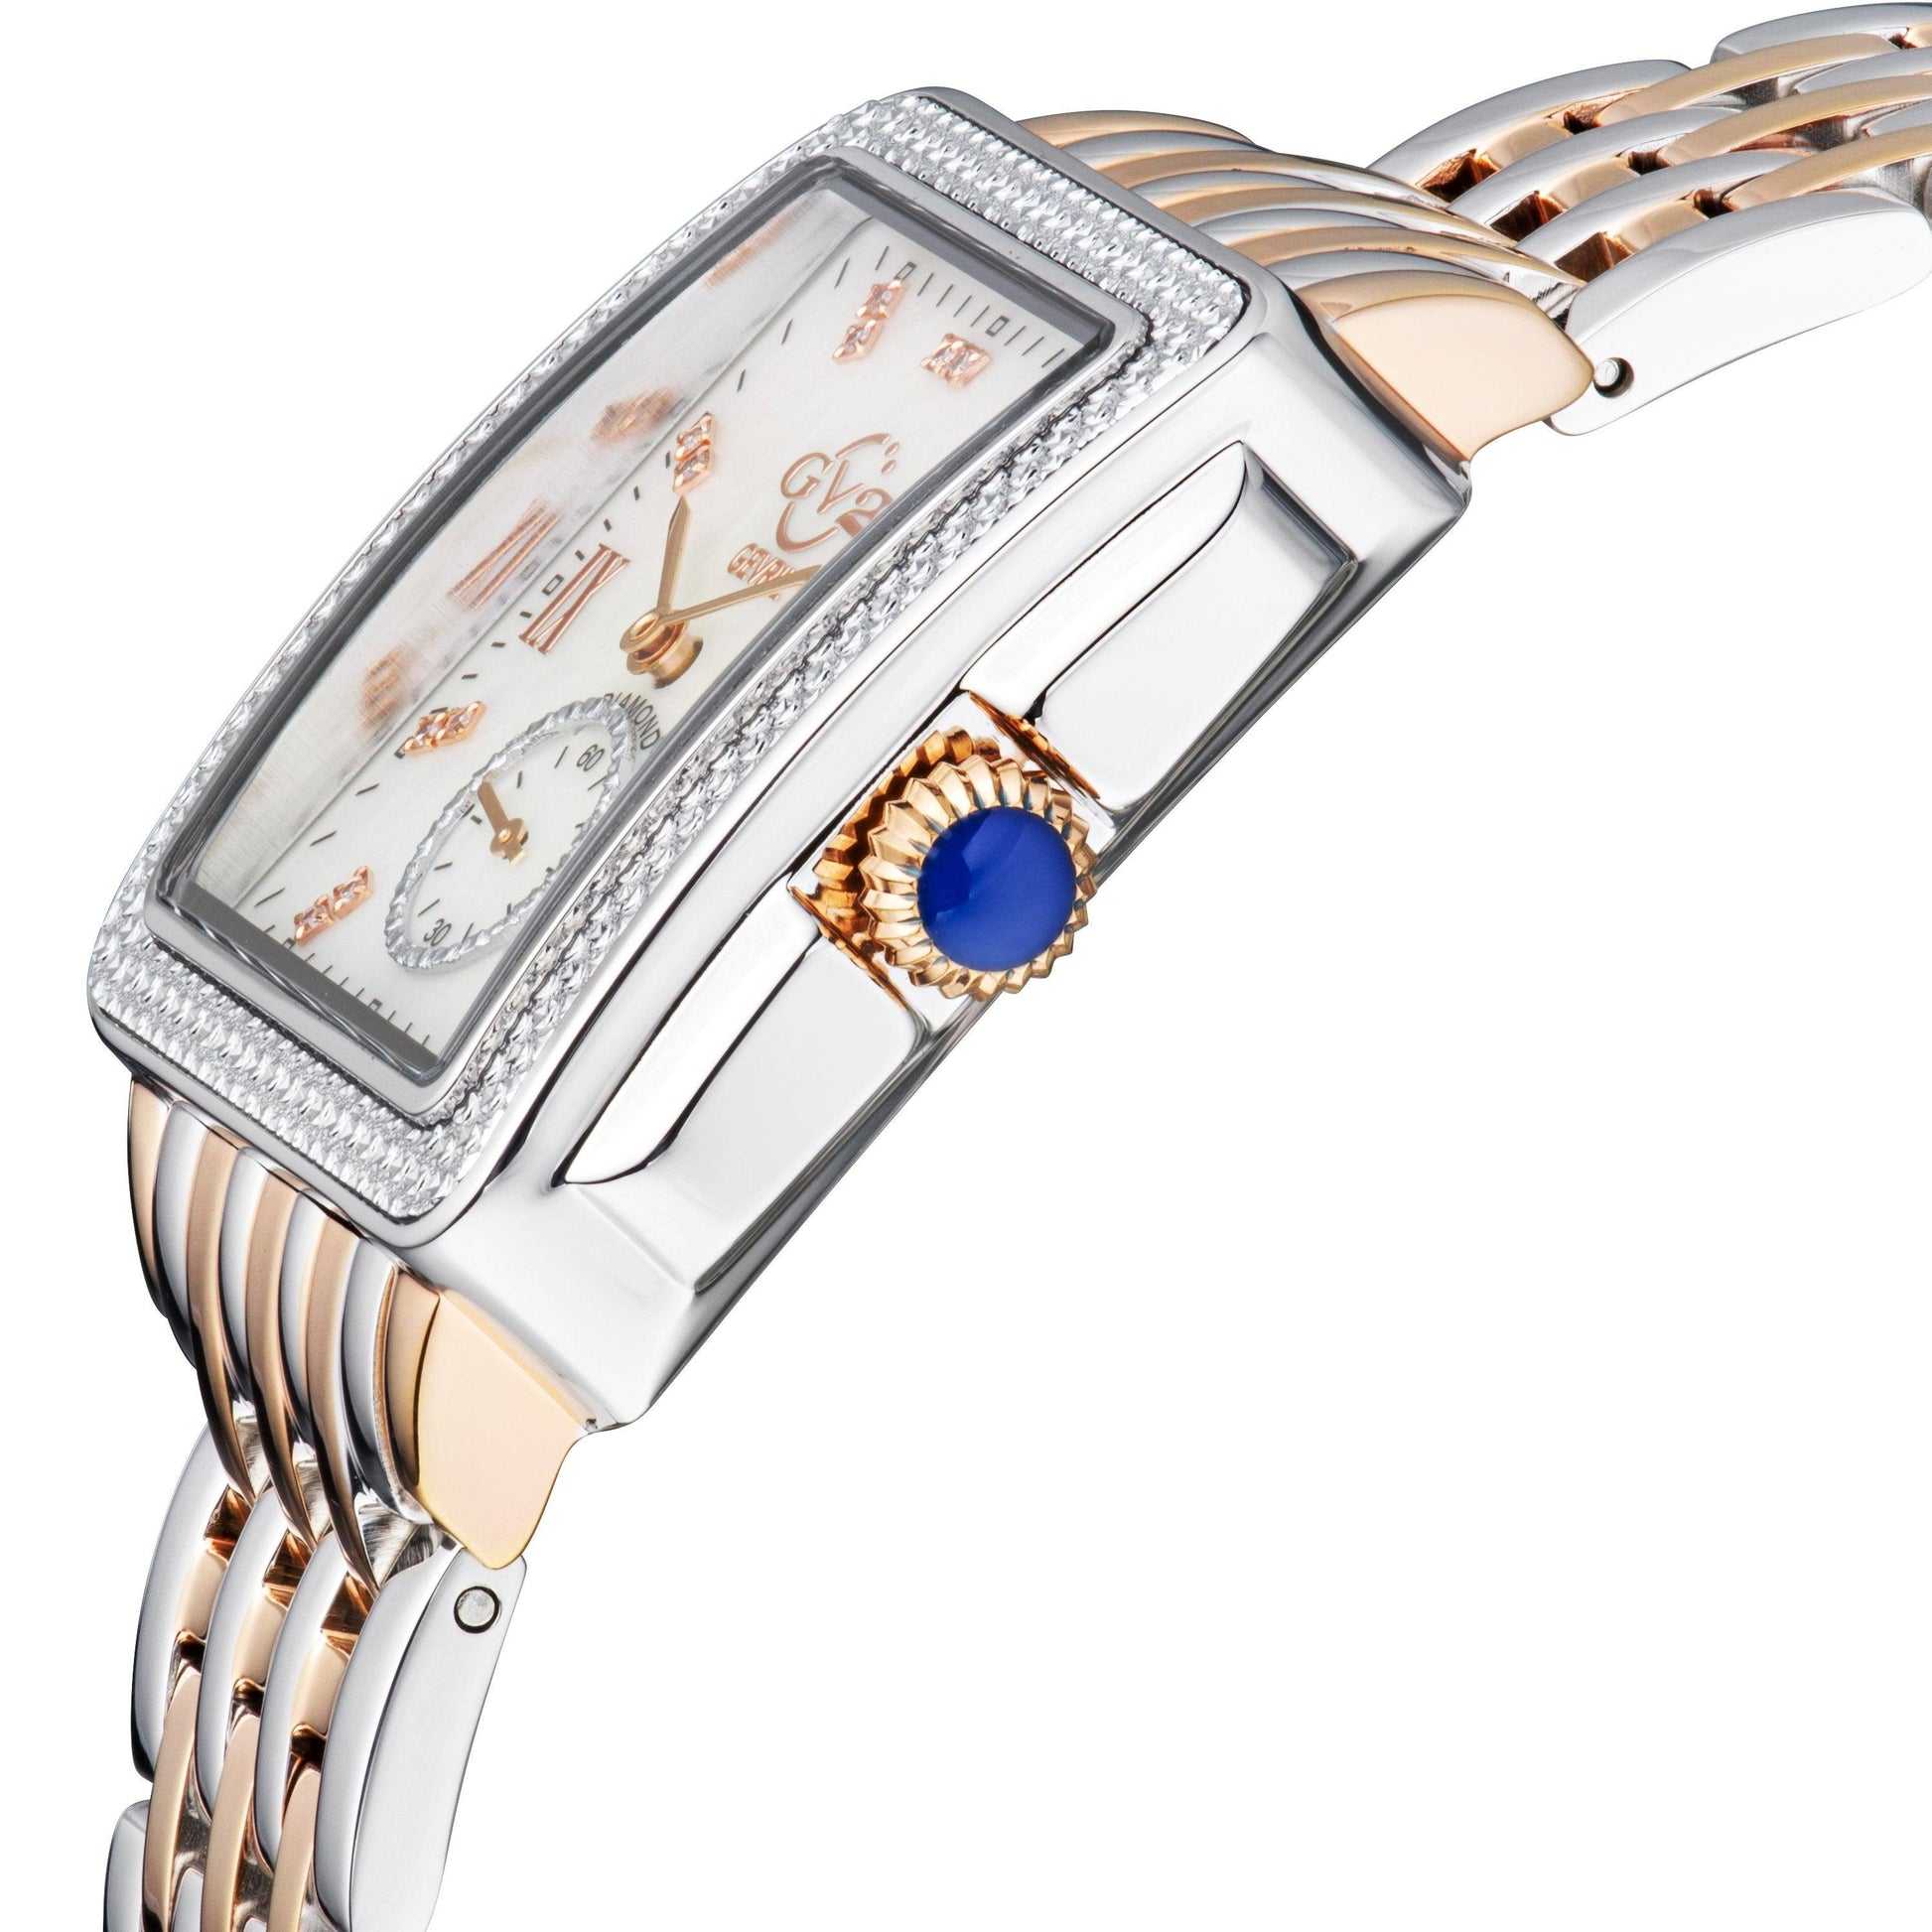 Gevril-Luxury-Swiss-Watches-GV2 Bari Diamond-9254B